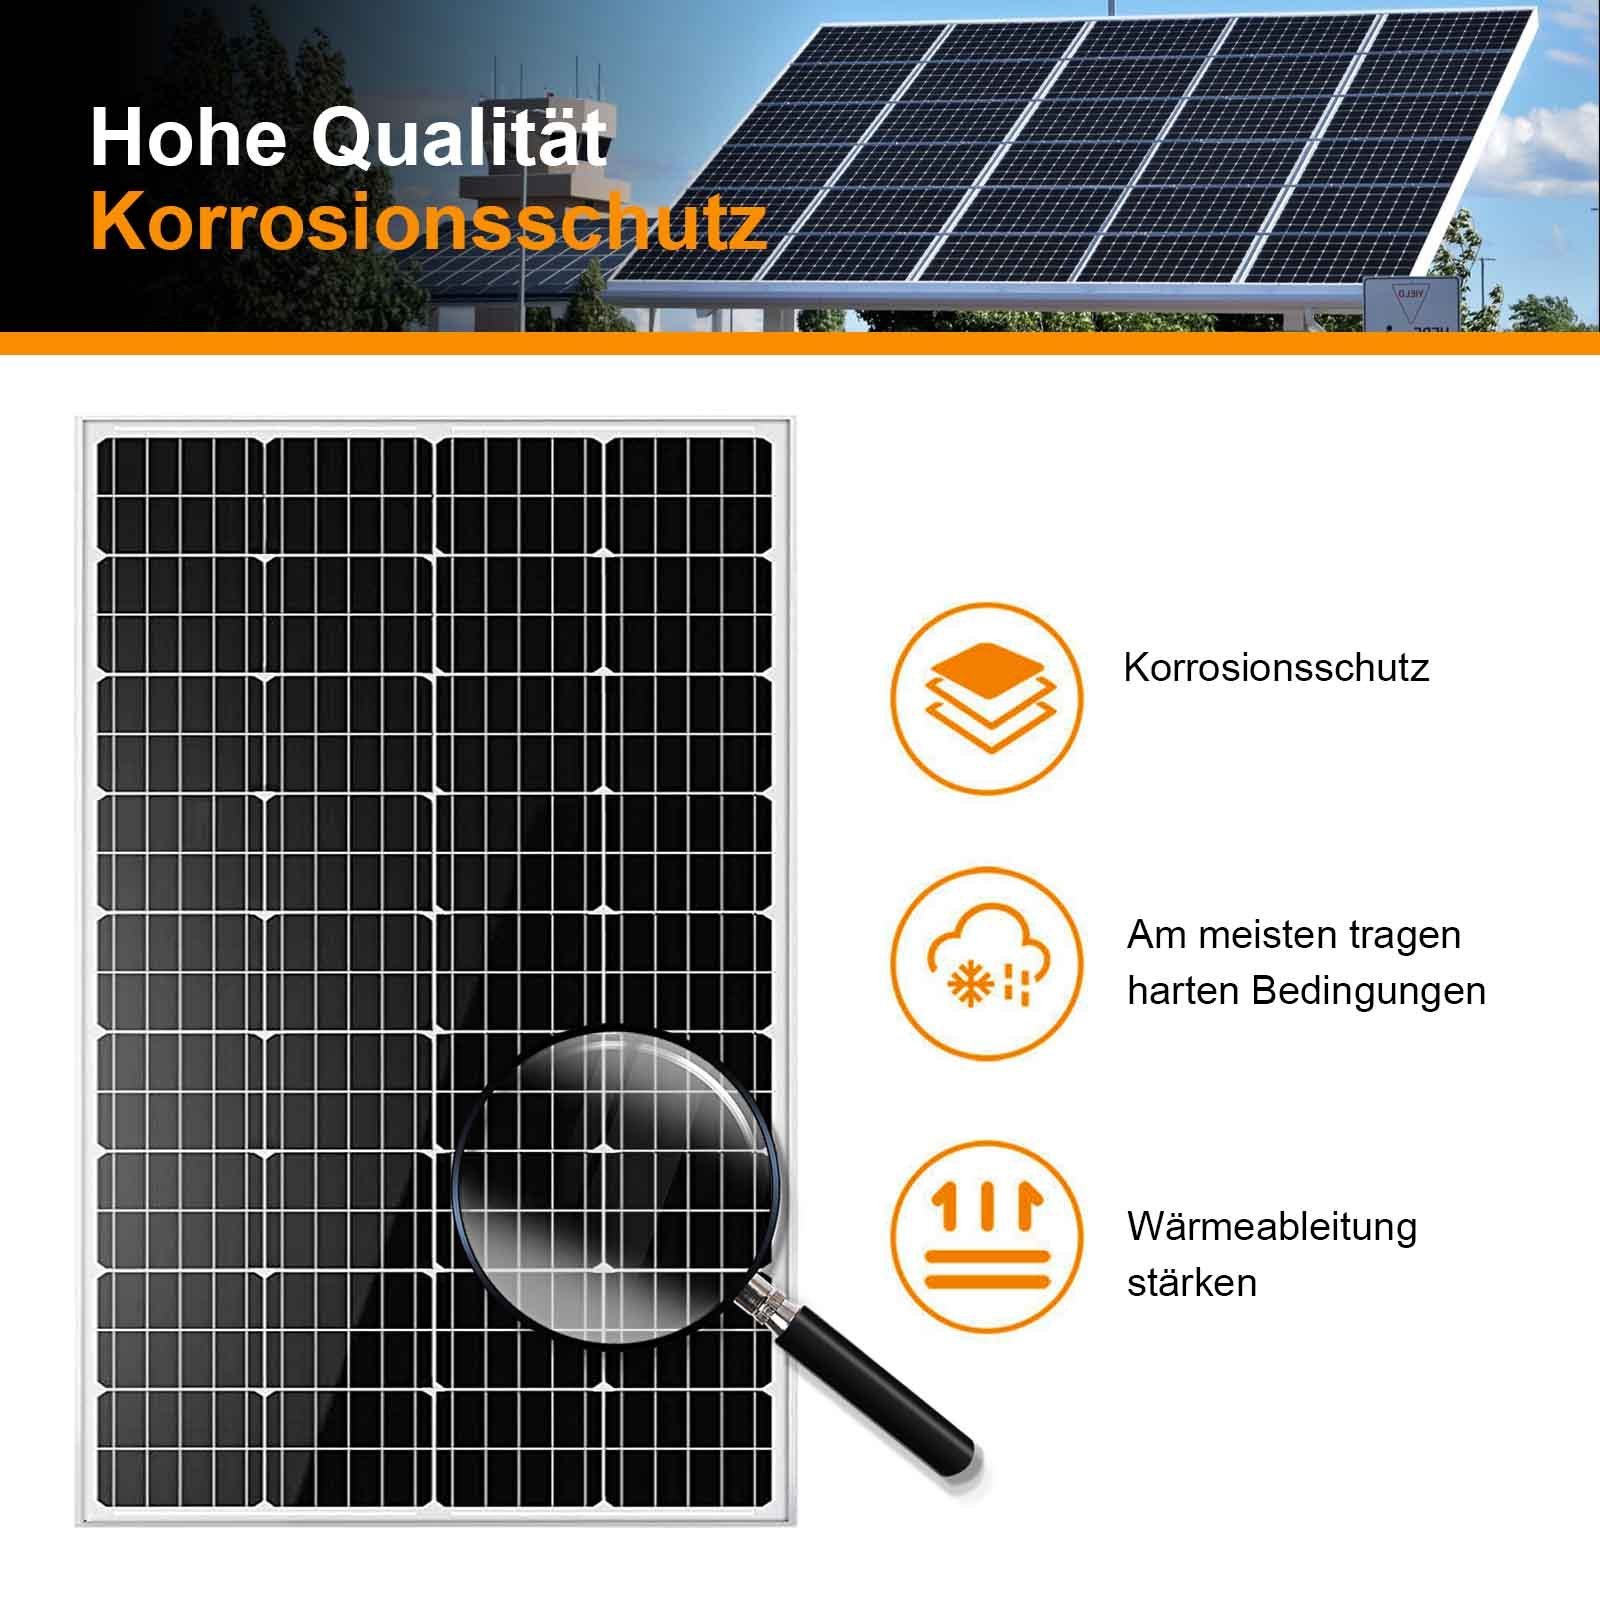 12V Solarmodul GLIESE Solarpanel Solarmodul 200w 1000W